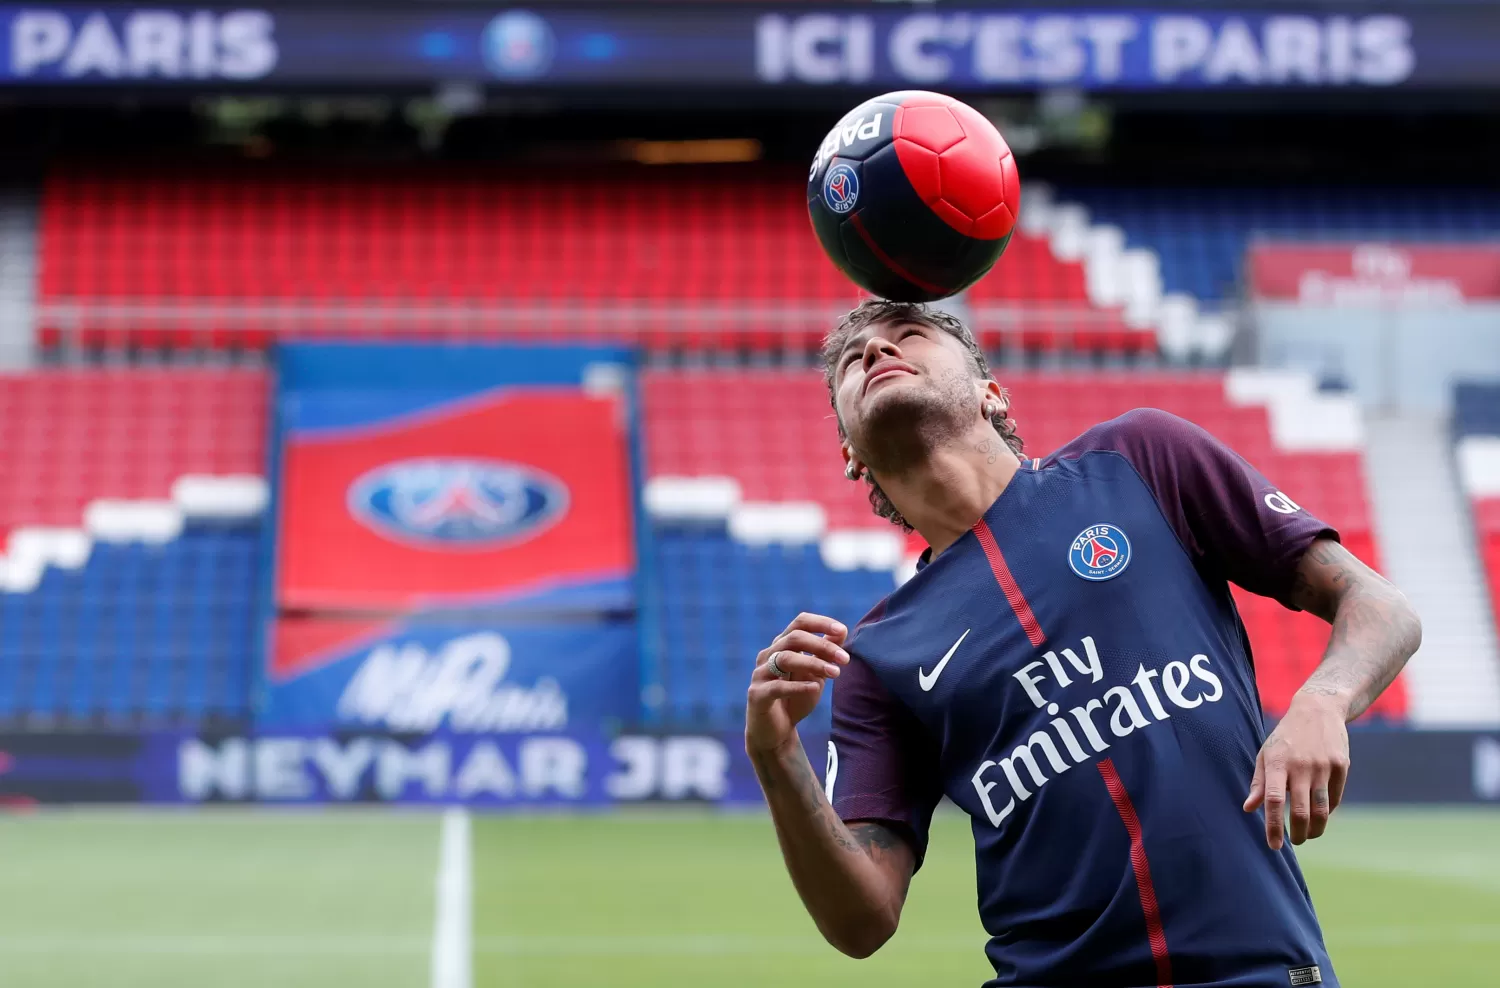 LA NUEVA JOYA. En un equipo plagado de estrellas, Neymar buscará mayor protagonismo. REUTERS